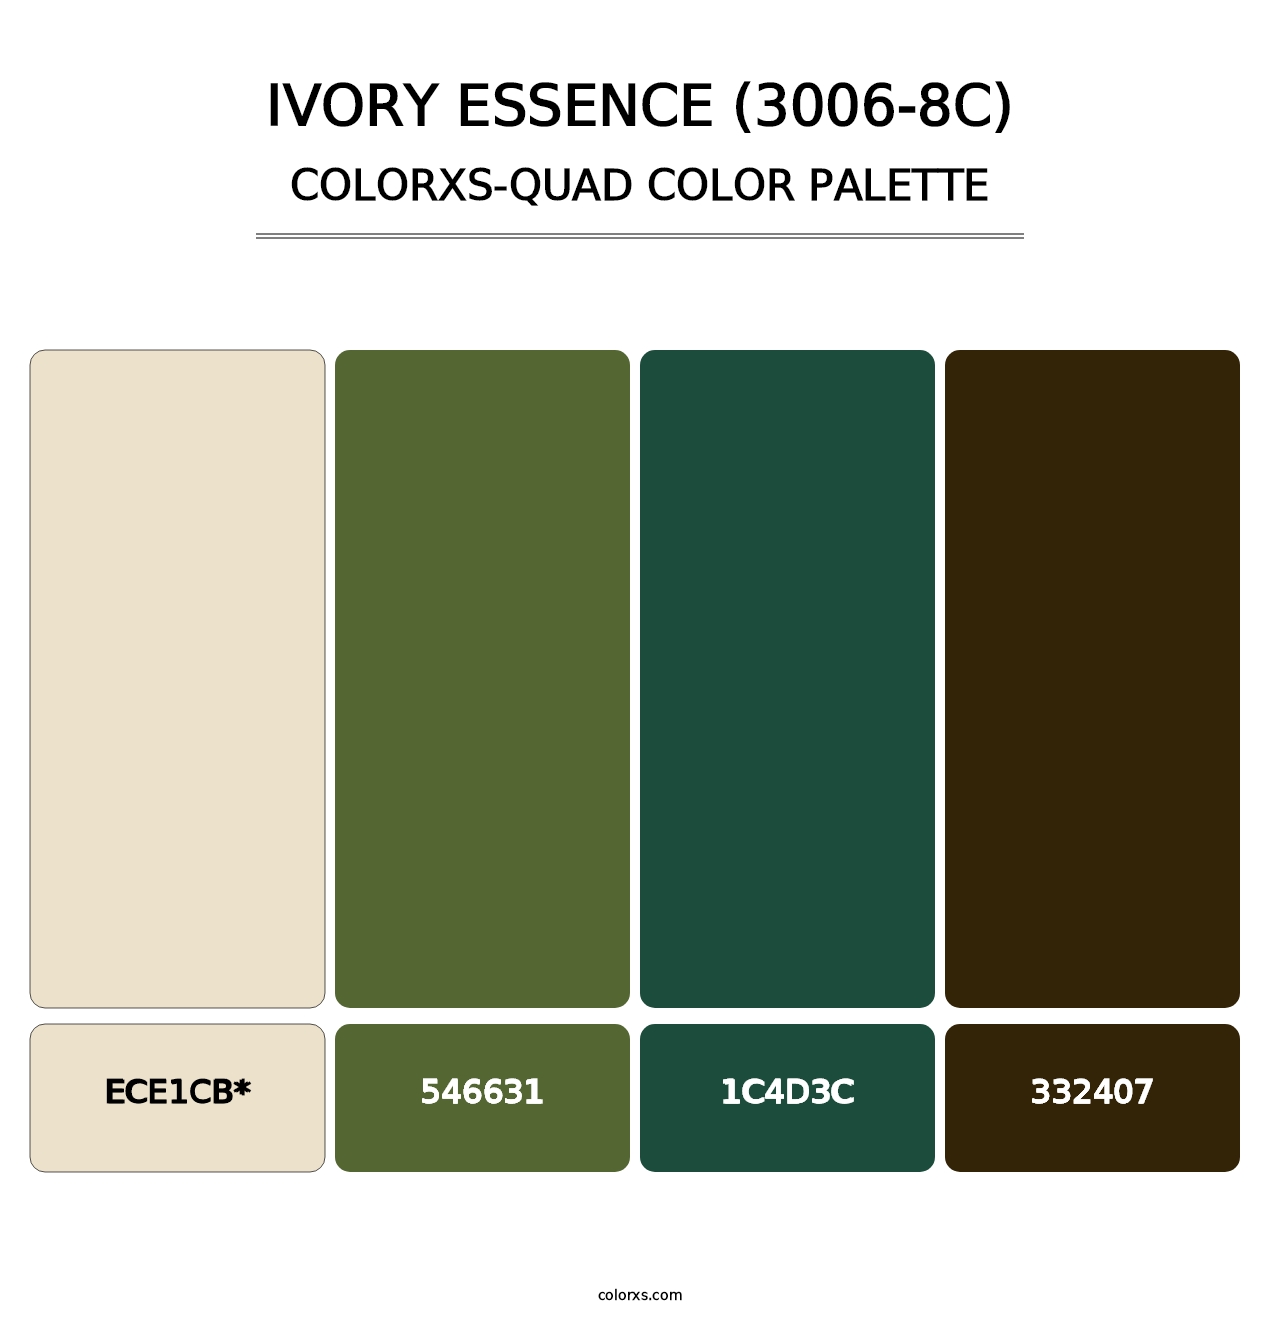 Ivory Essence (3006-8C) - Colorxs Quad Palette